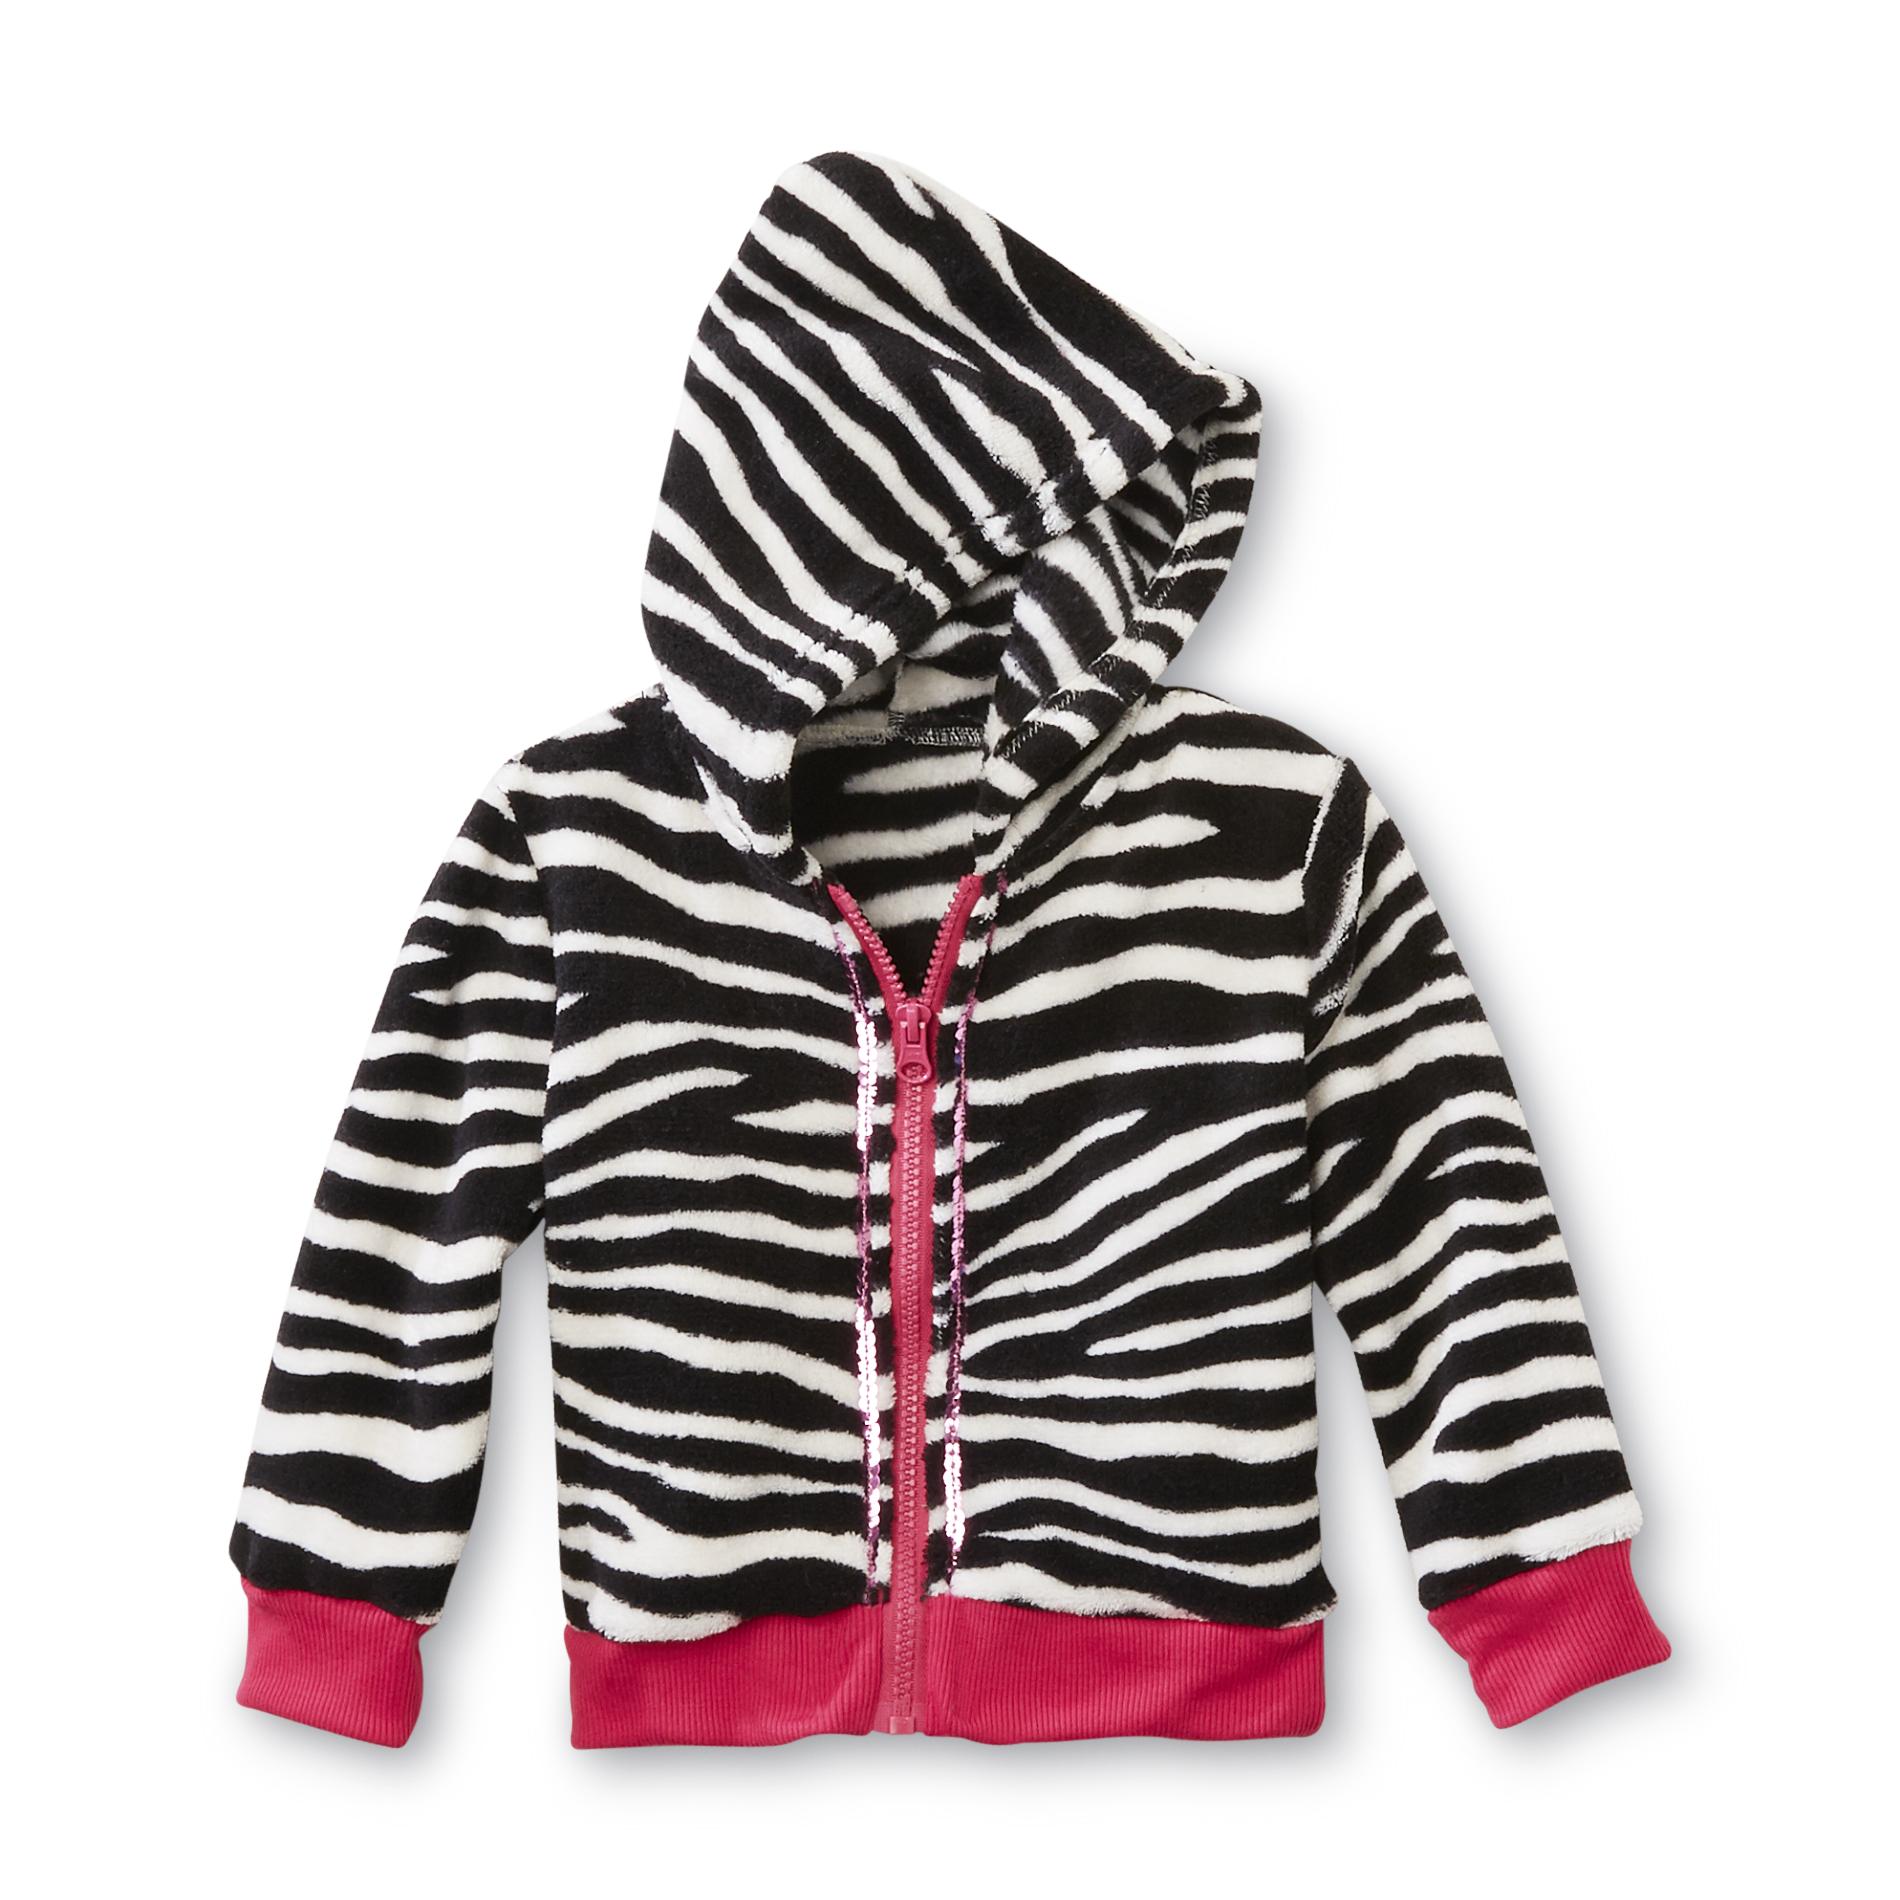 WonderKids Infant & Toddler Girl's Fleece Hoodie Jacket - Zebra Print